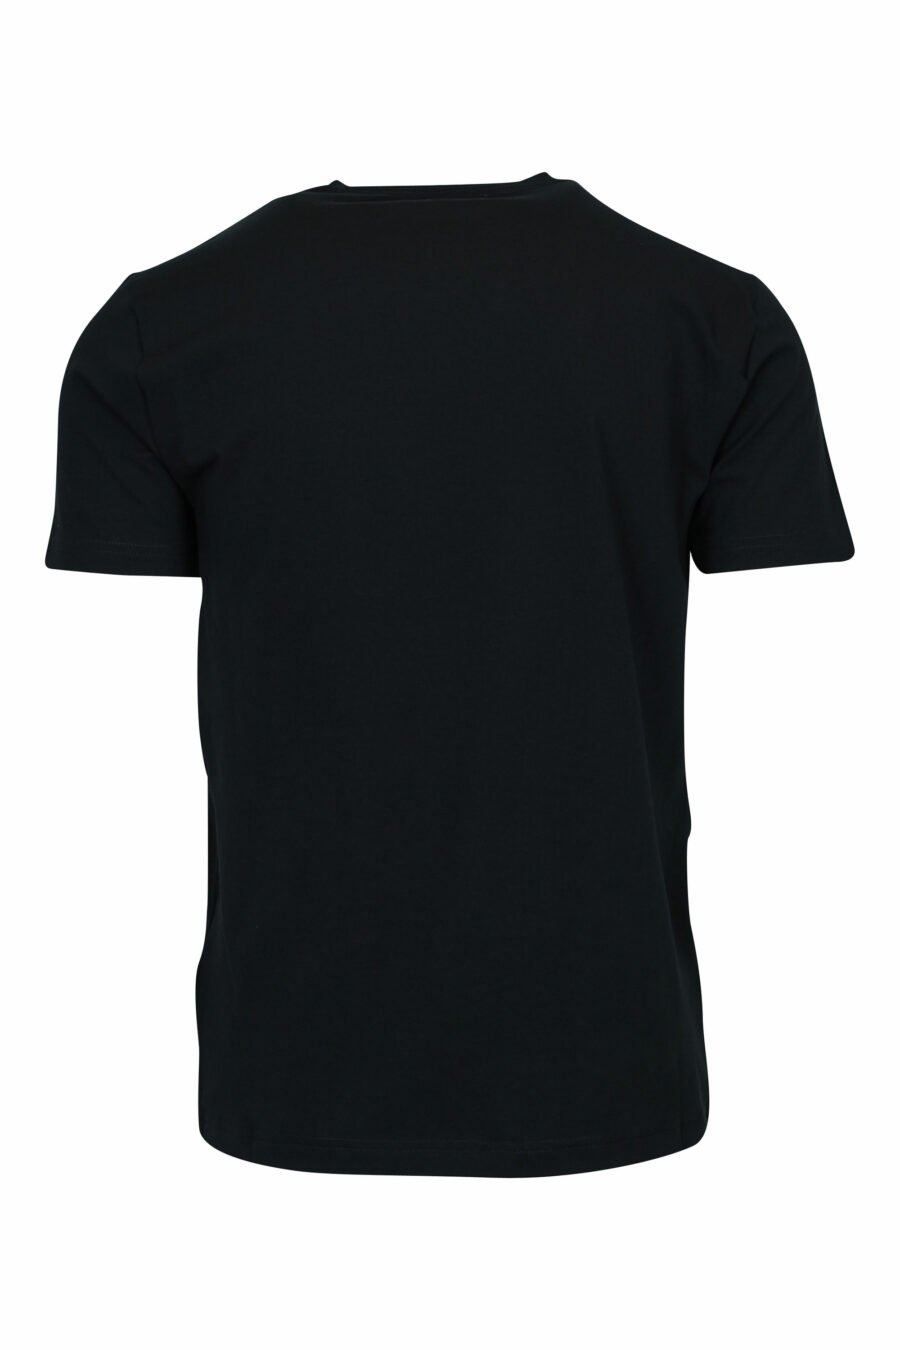 T-shirt noir avec maxilogo "lux identity" néon doré - 8057970672234 1